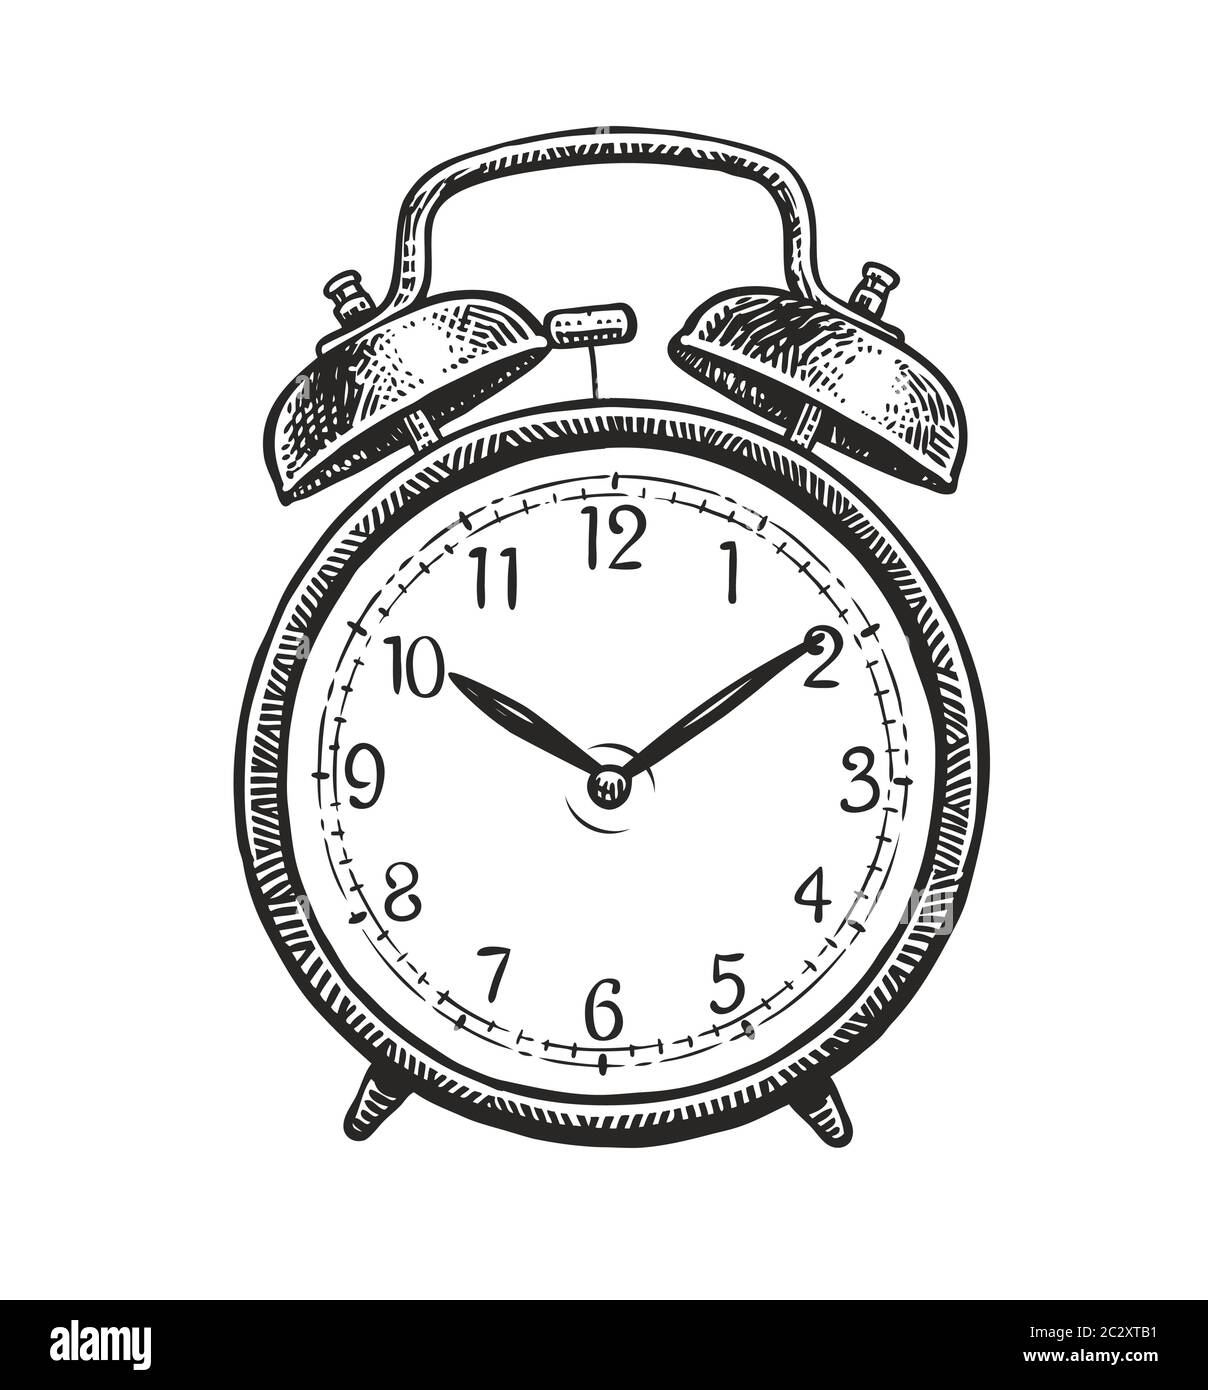 Retro alarm clock sketch. Hand-drawn vintage vector illustration Stock Vector